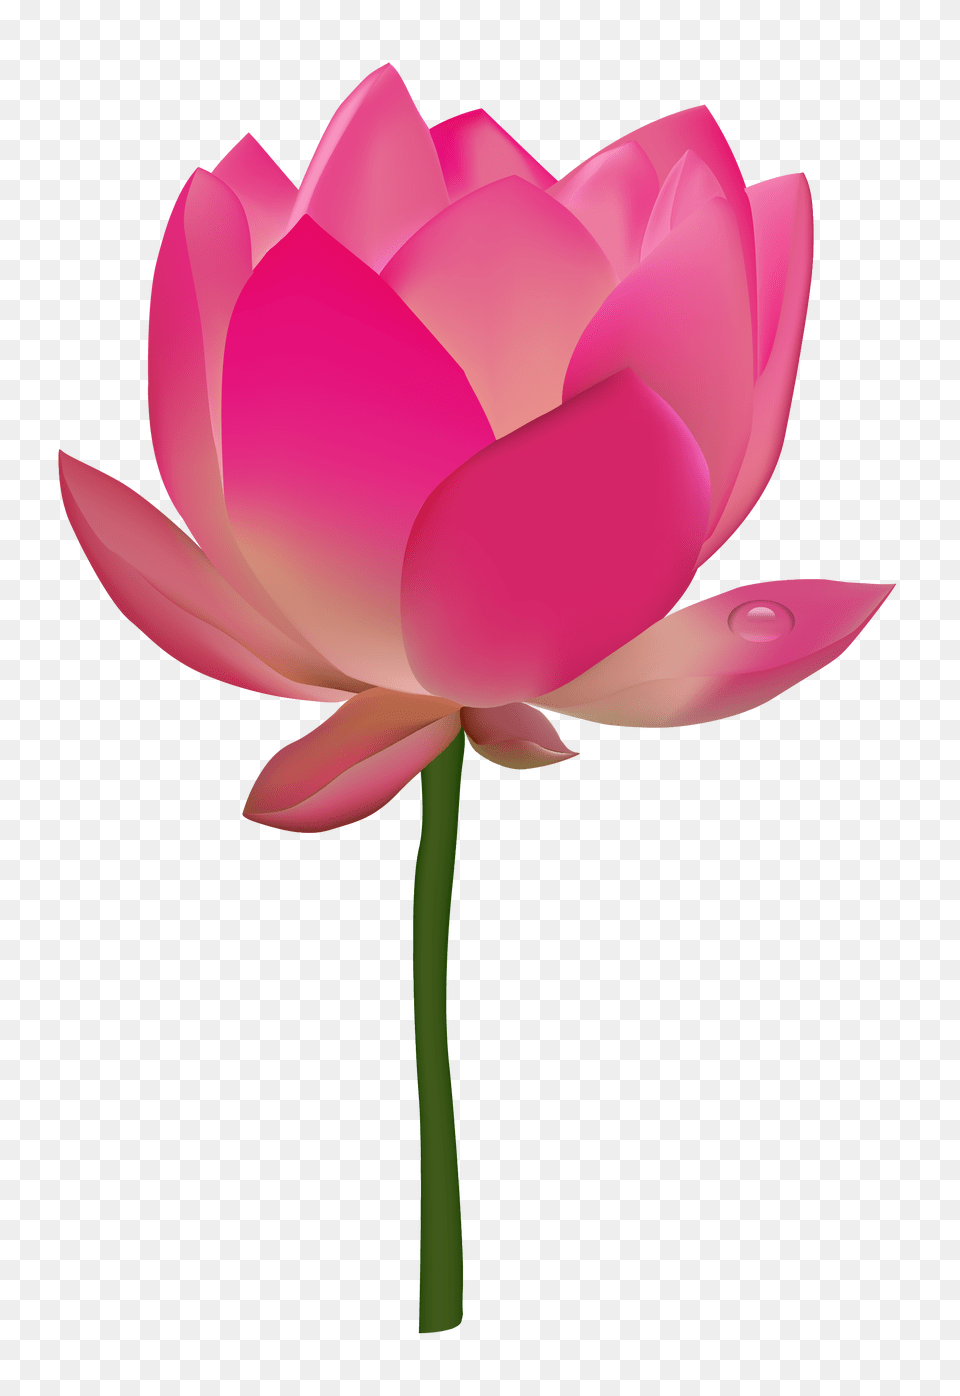 Pngpix Com Lotus Flower, Dahlia, Petal, Plant, Rose Png